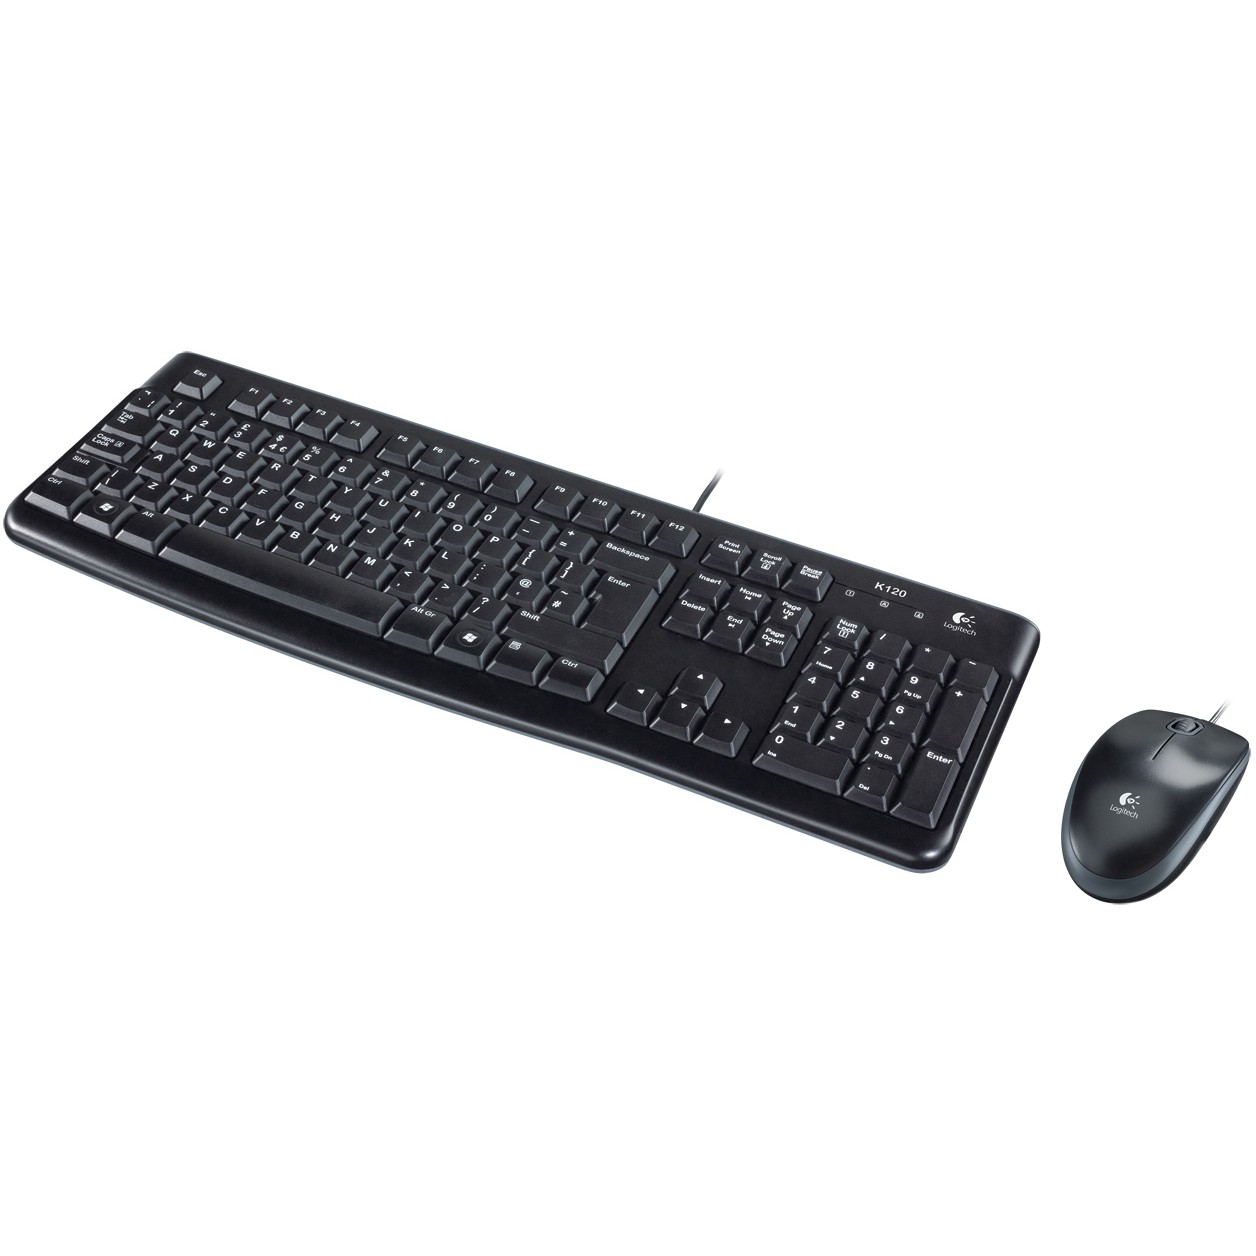 Logitech Desktop MK120 keyboard - 920-002563